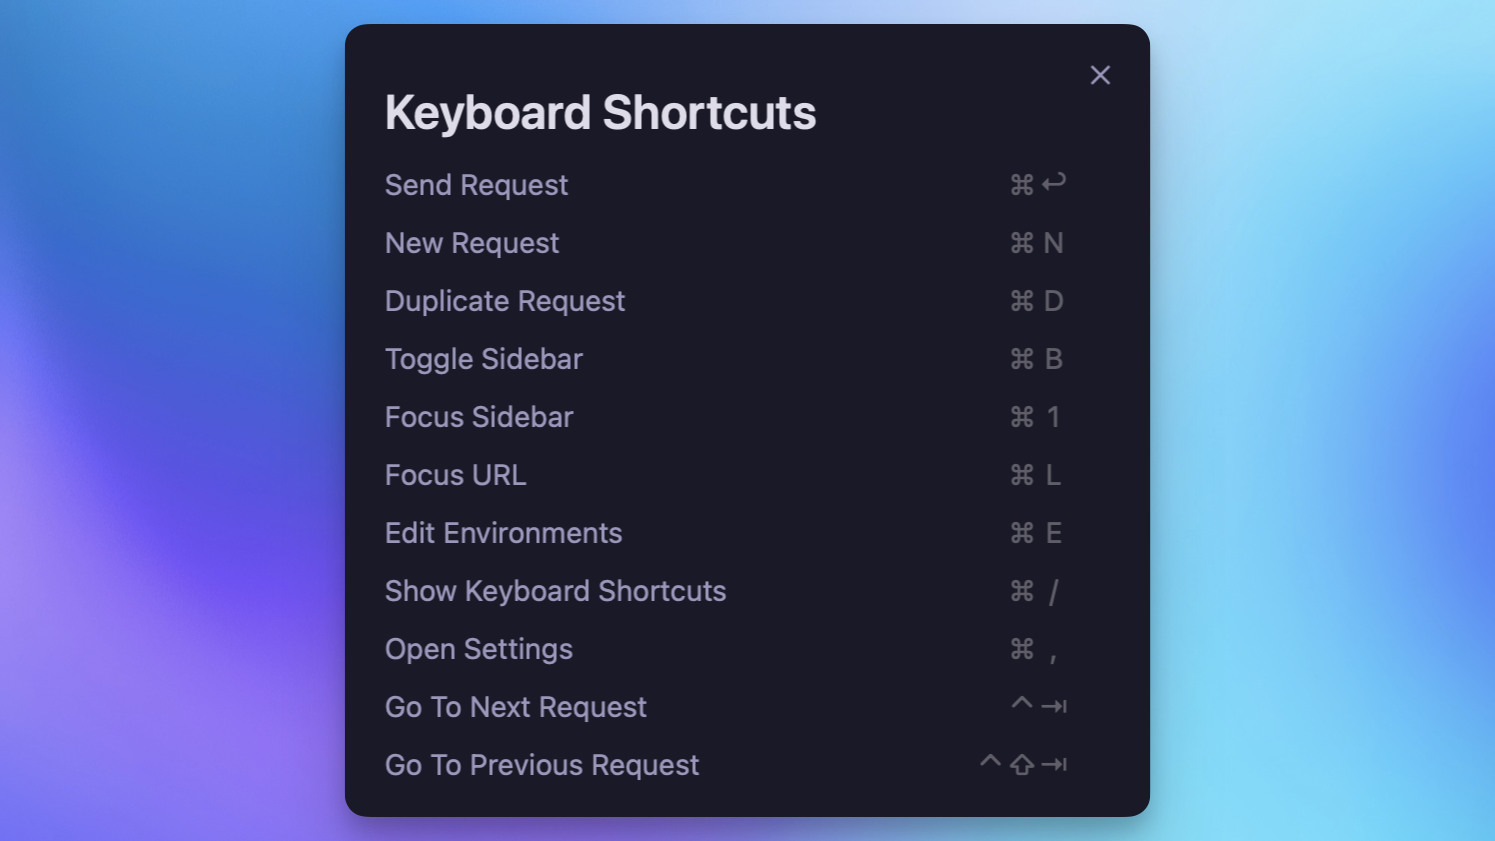 Keyboard shortcut dialog